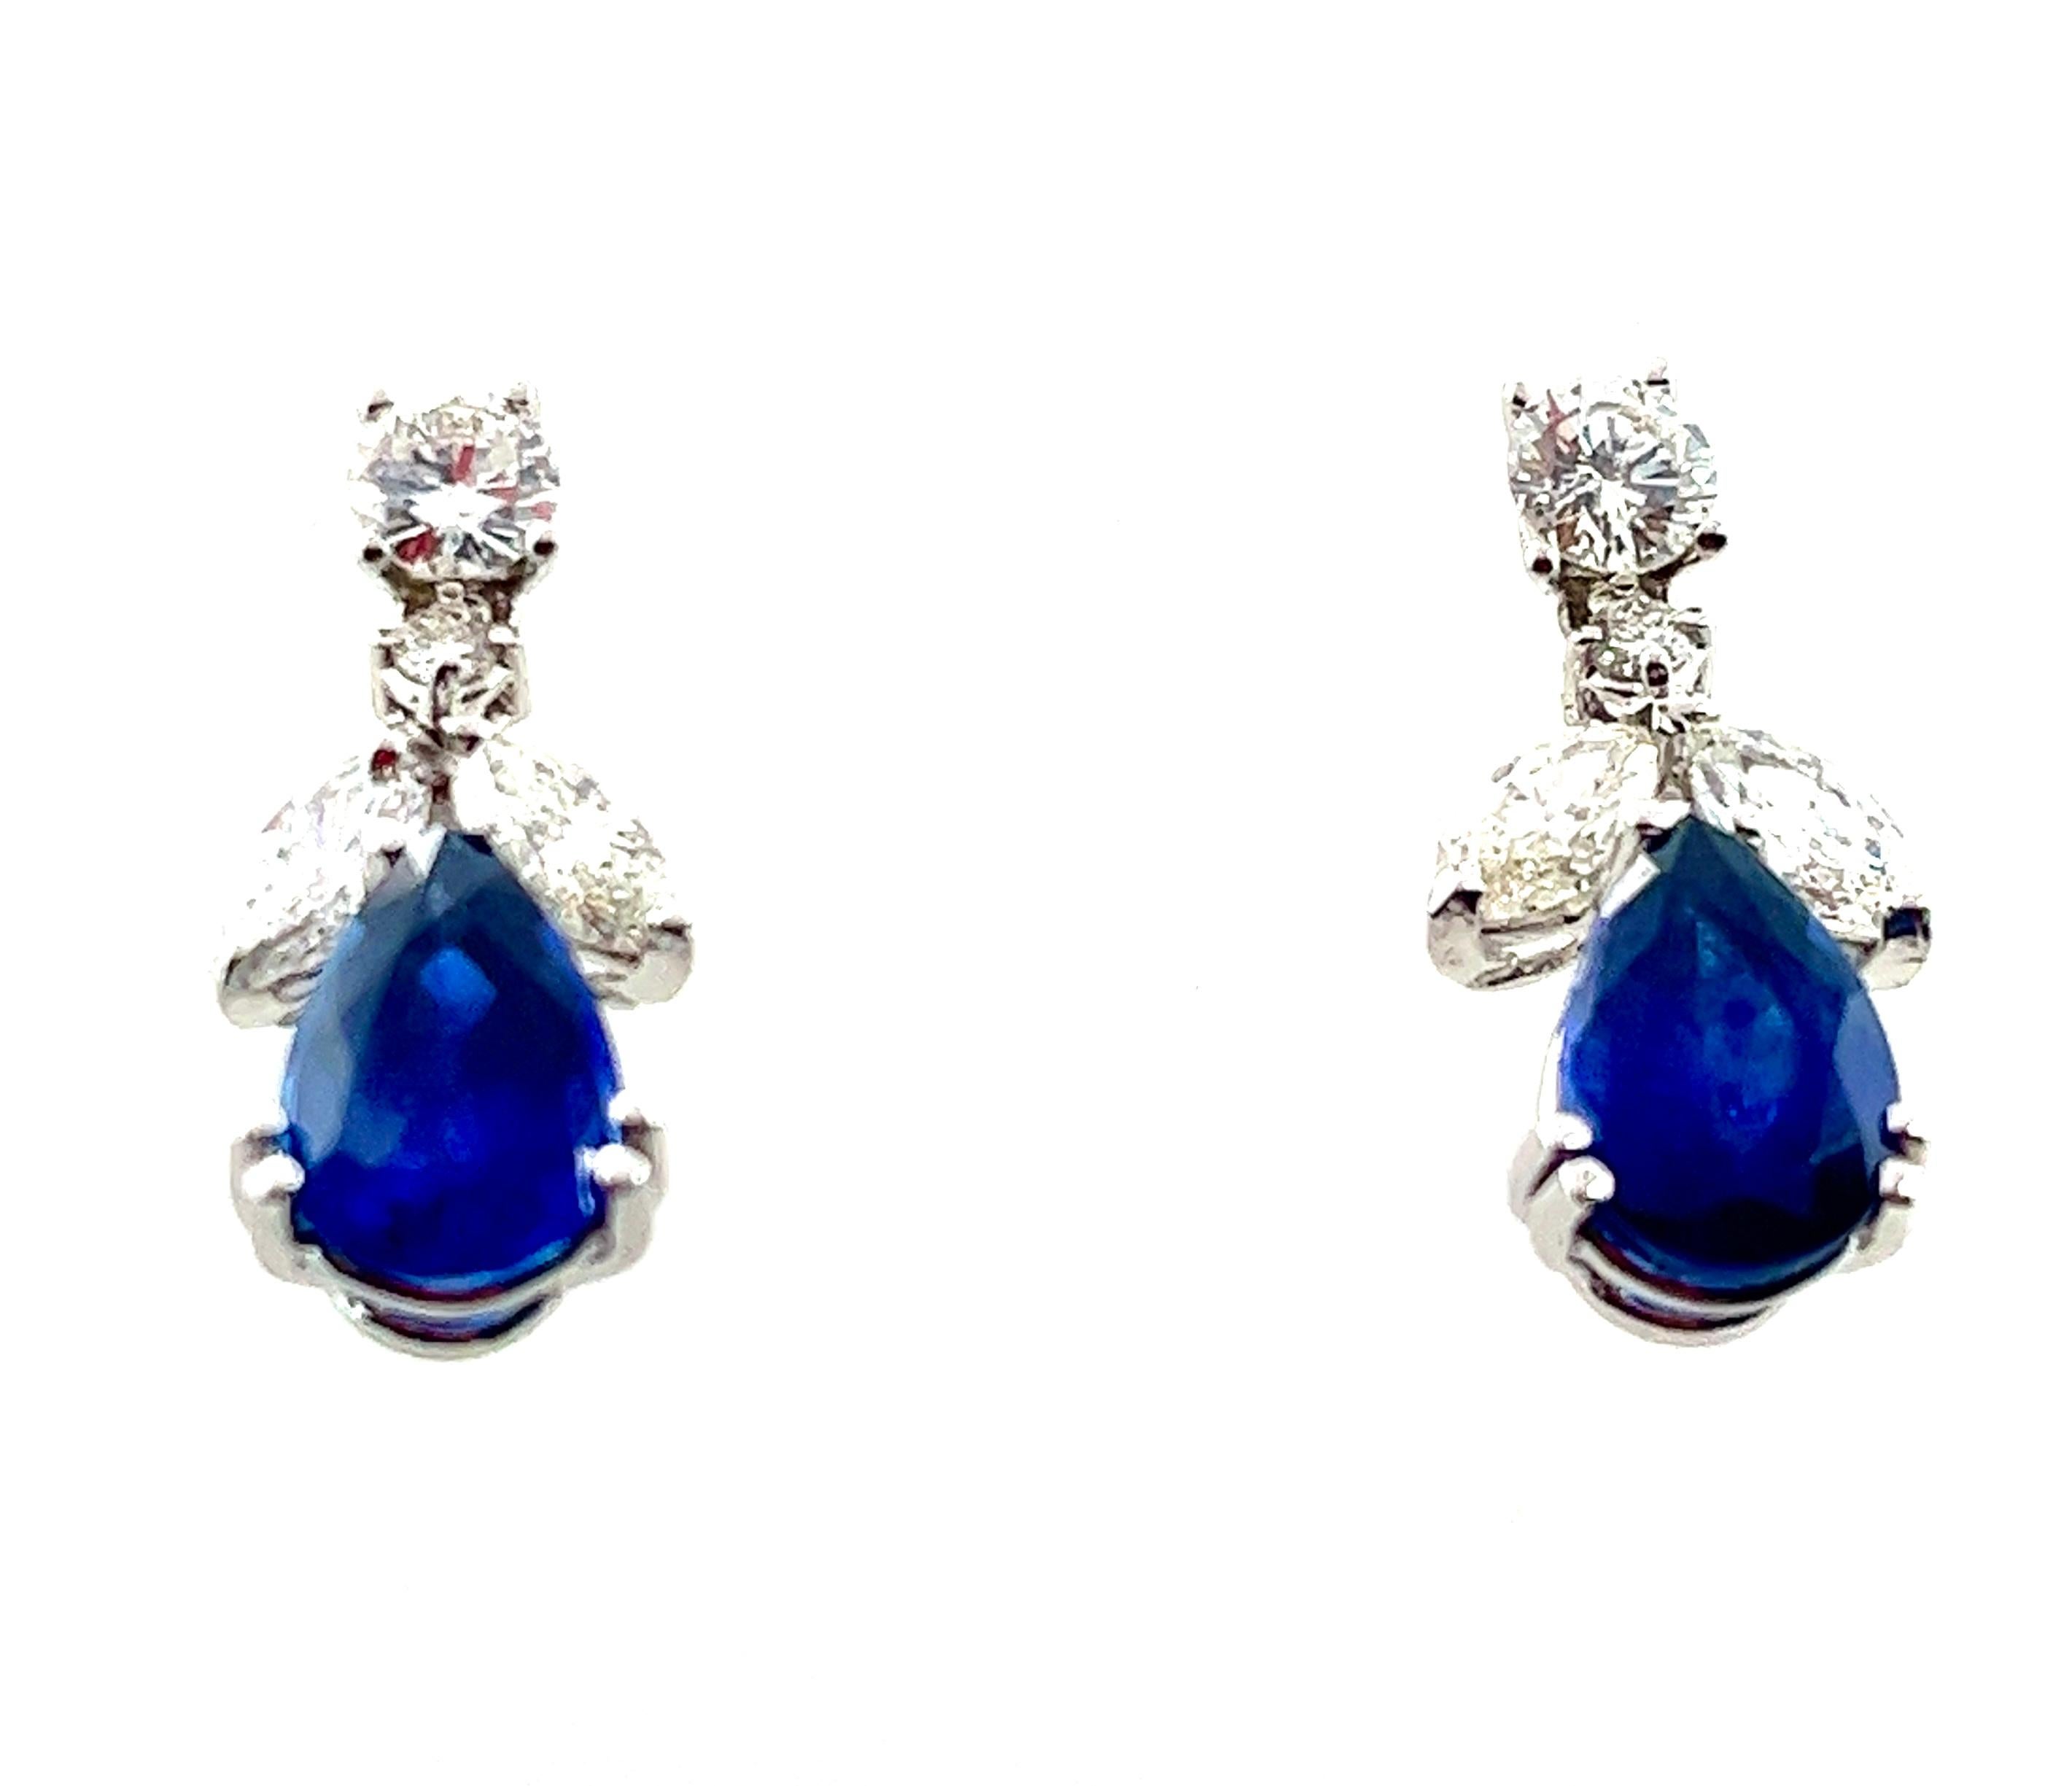 Wir präsentieren den Inbegriff der Eleganz: Ohrringe mit birnenförmigen Saphiren und Diamanten

Erleben Sie ein Meisterwerk, das Ihr Herz höher schlagen lässt! Diese exquisiten Ohrringe bestechen durch ein schillerndes Duo aus natürlichen,